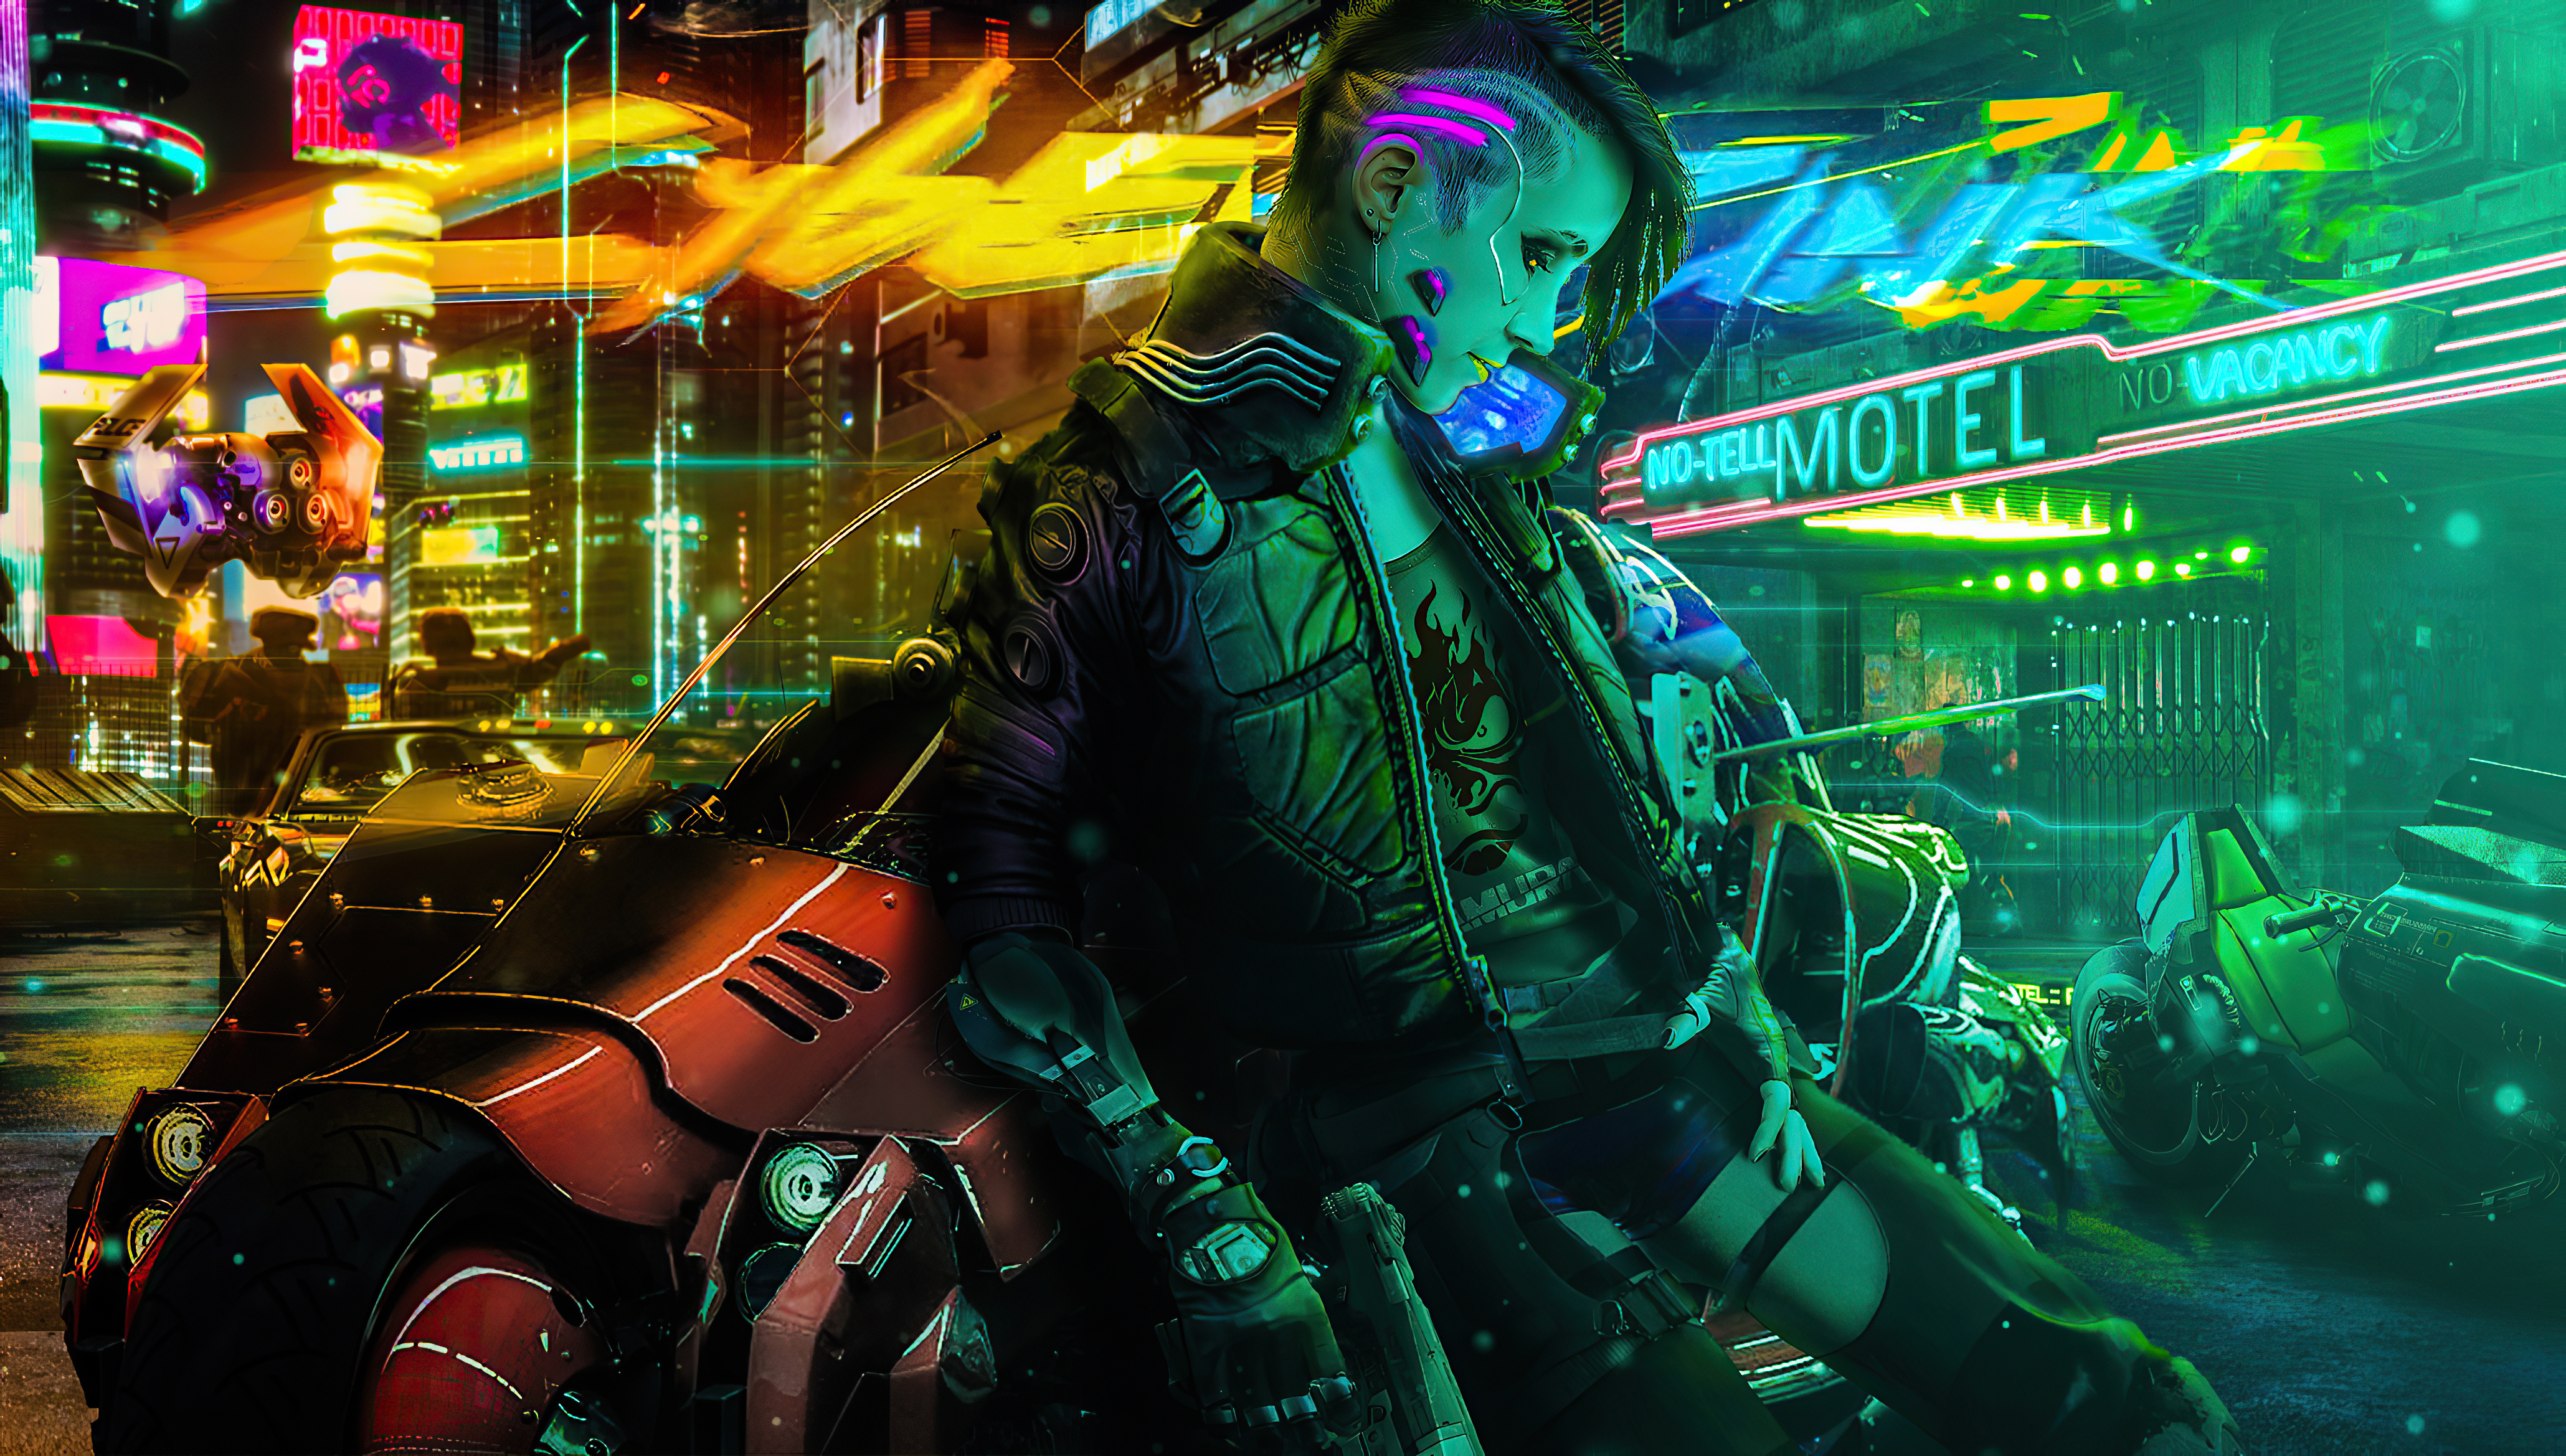 Cyberpunk Girl Biker New 2020 Wallpaper, HD Artist Wallpaper, 4k Wallpaper , Image, Background, Photos and Picture